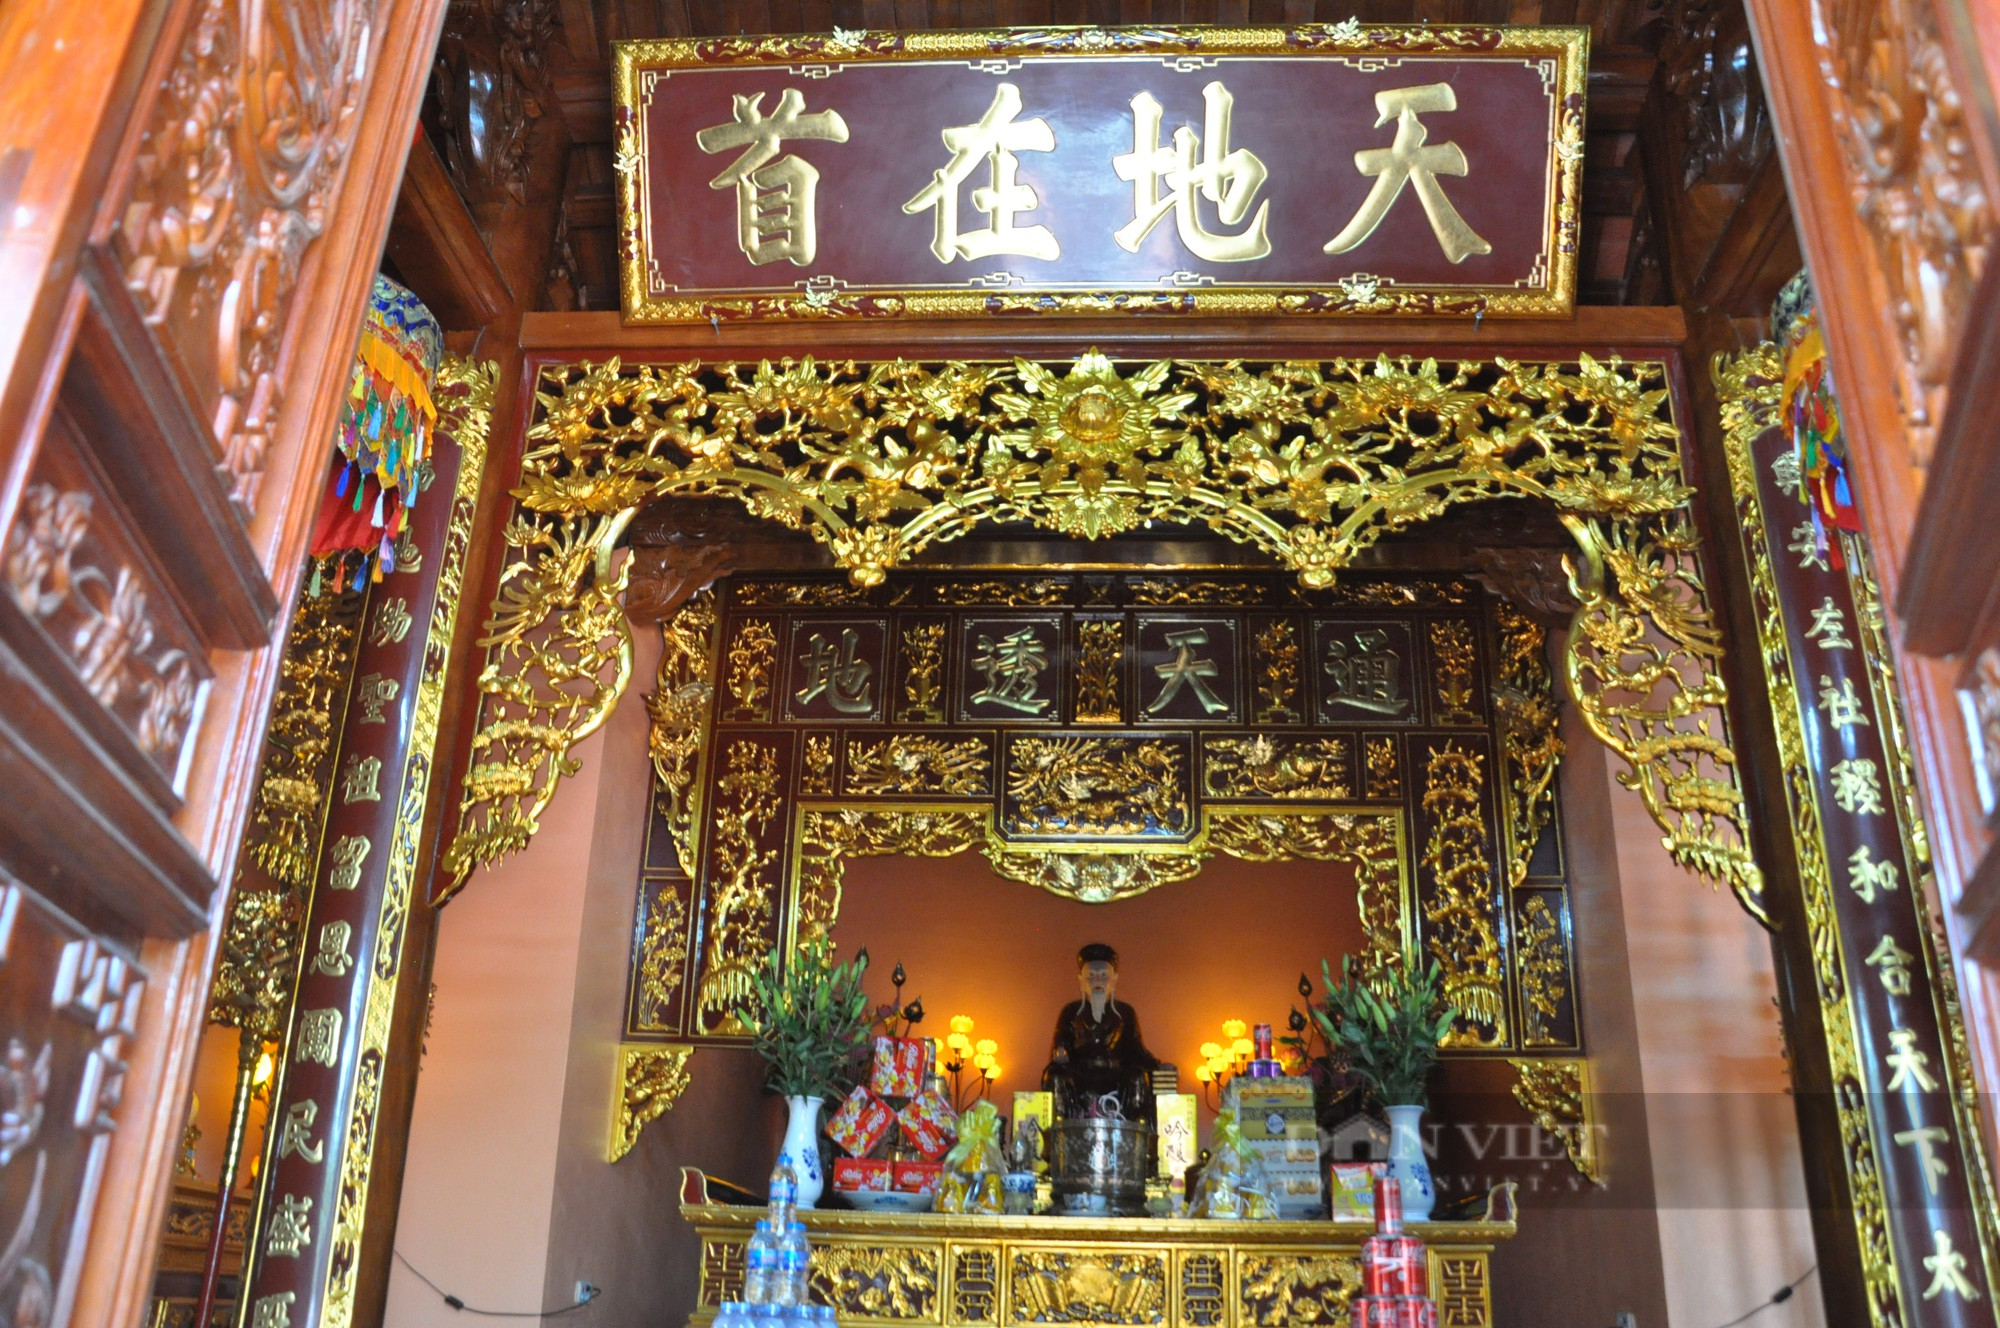 Làng cổ ở Hưng Yên từng được thánh địa lý Tả Ao trấn yểm phát về khoa cử, buôn bán giàu có - Ảnh 4.